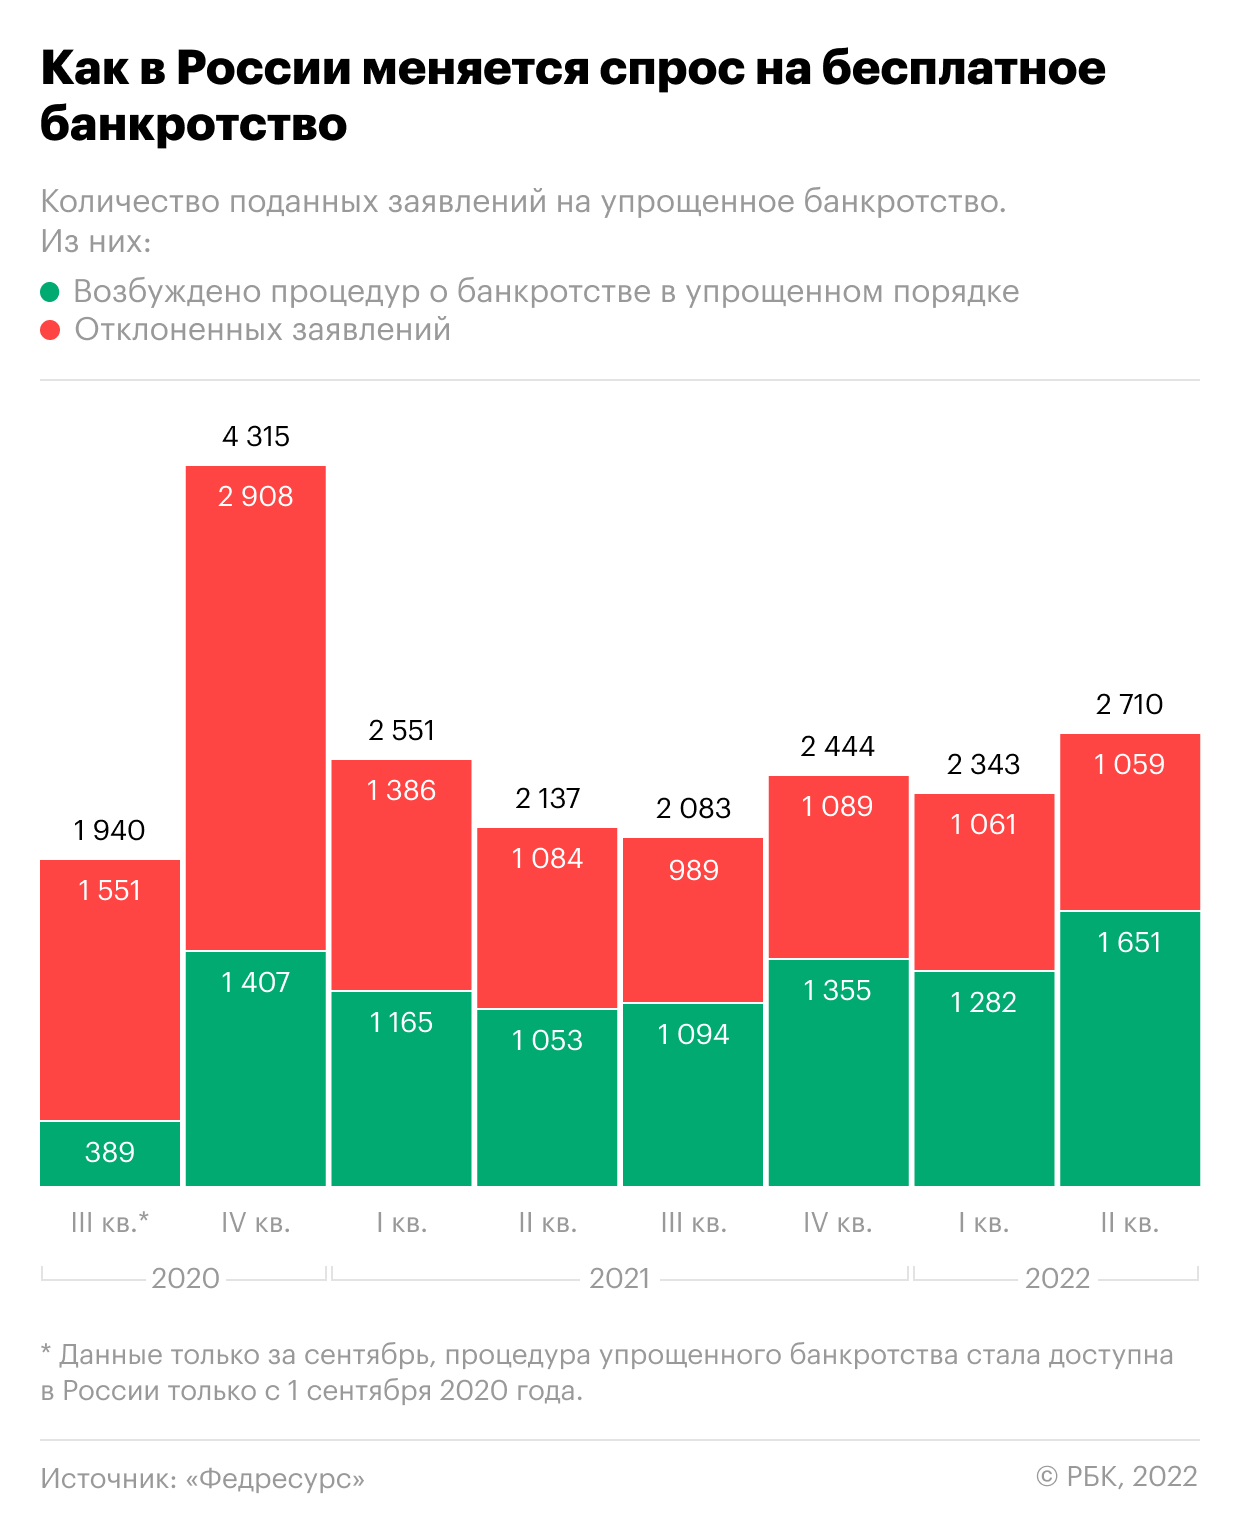 Как в России поменялся спрос на бесплатное банкротство. Инфографика